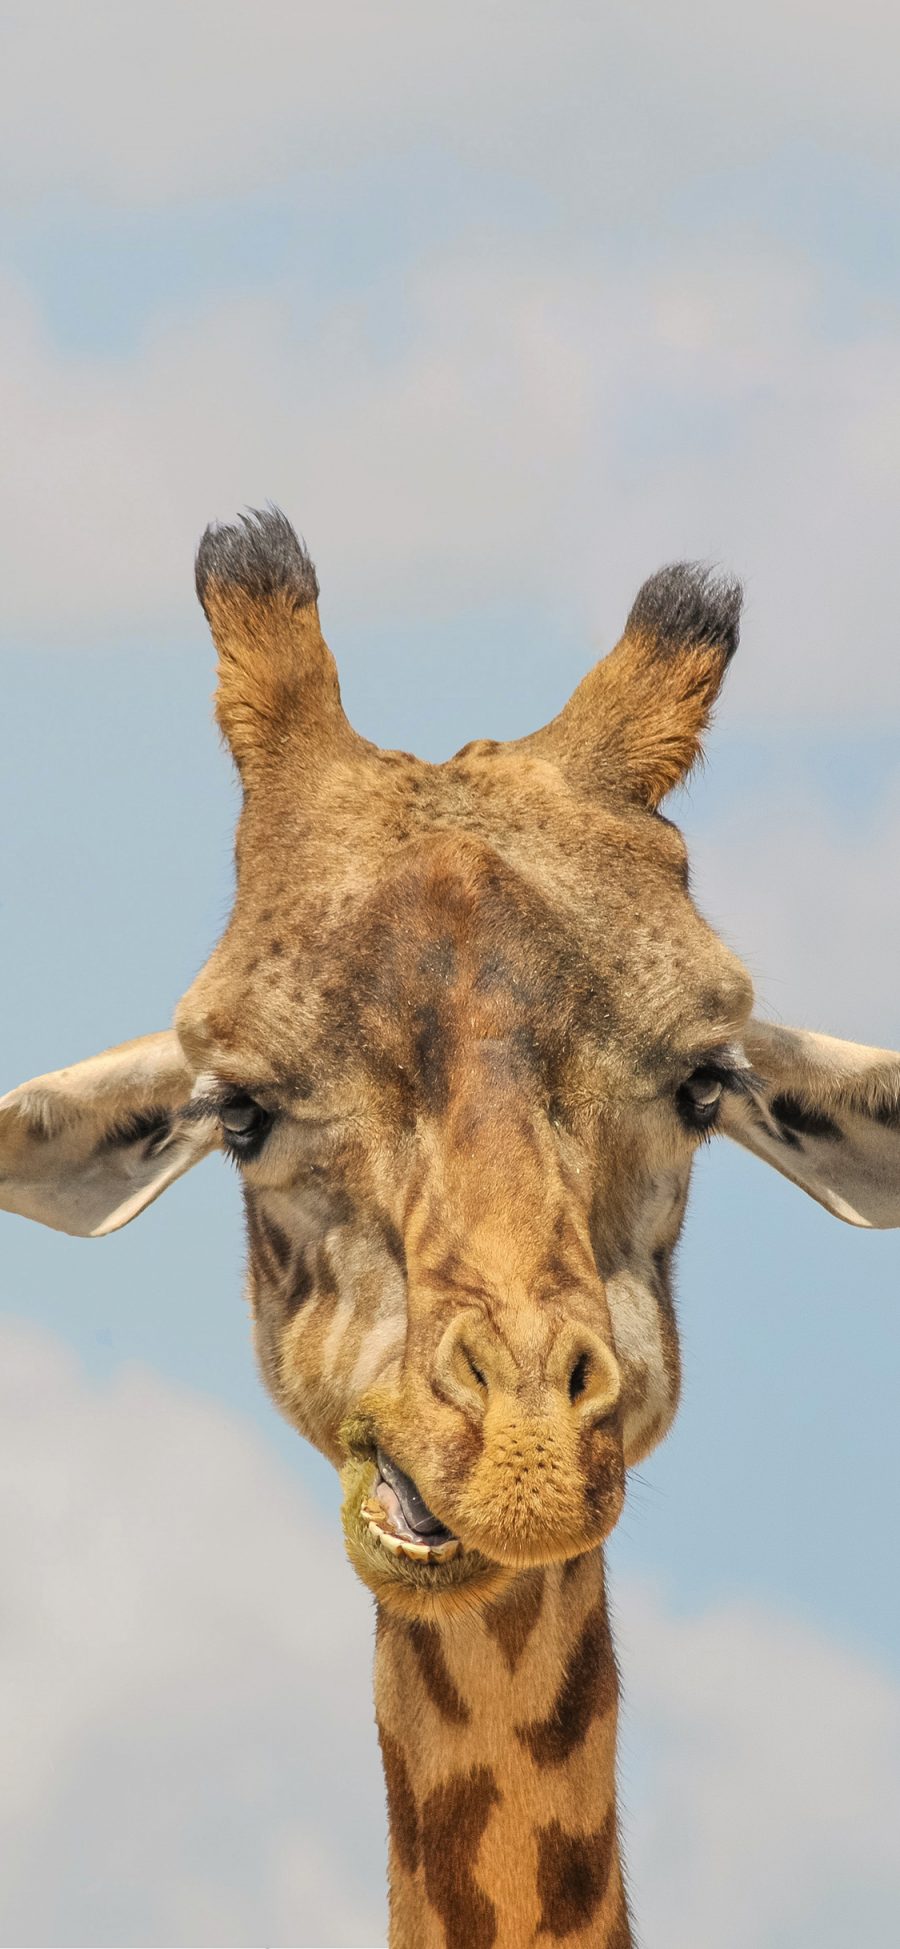 [2436×1125]长颈鹿 可爱 萌 斑纹 纹路 苹果手机壁纸图片